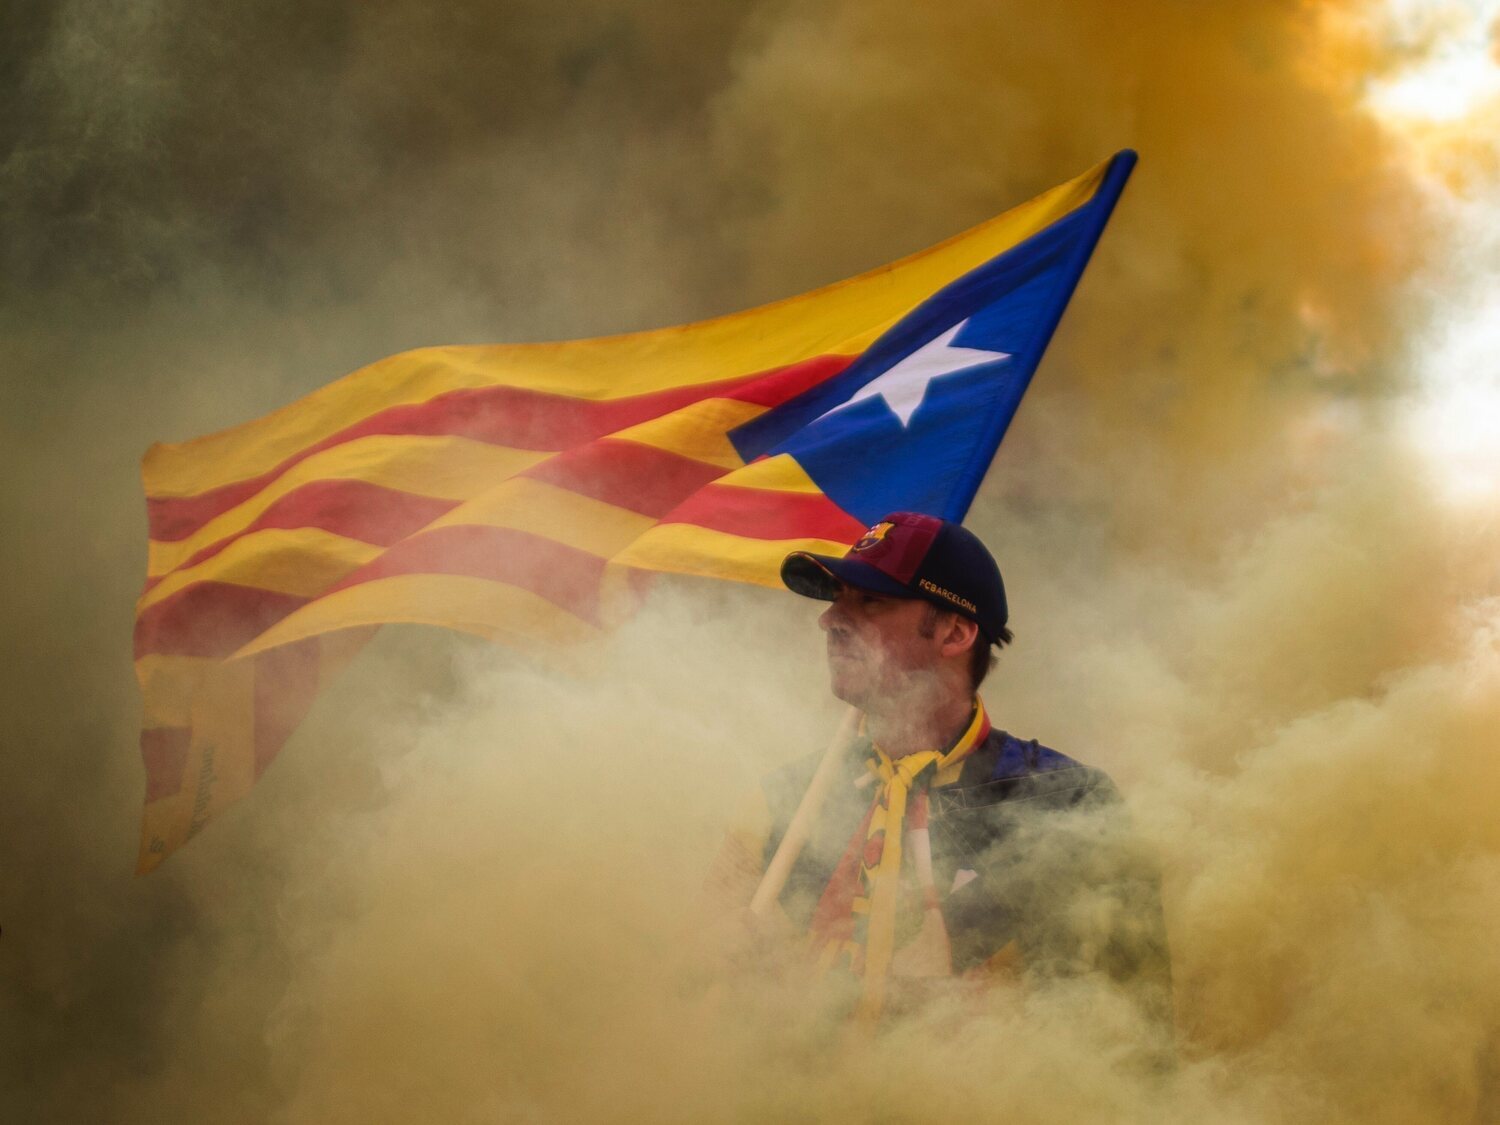 La Generalitat encarga un estudio para analizar las diferencias entre catalanes y españoles: concluye que son muy parecidos